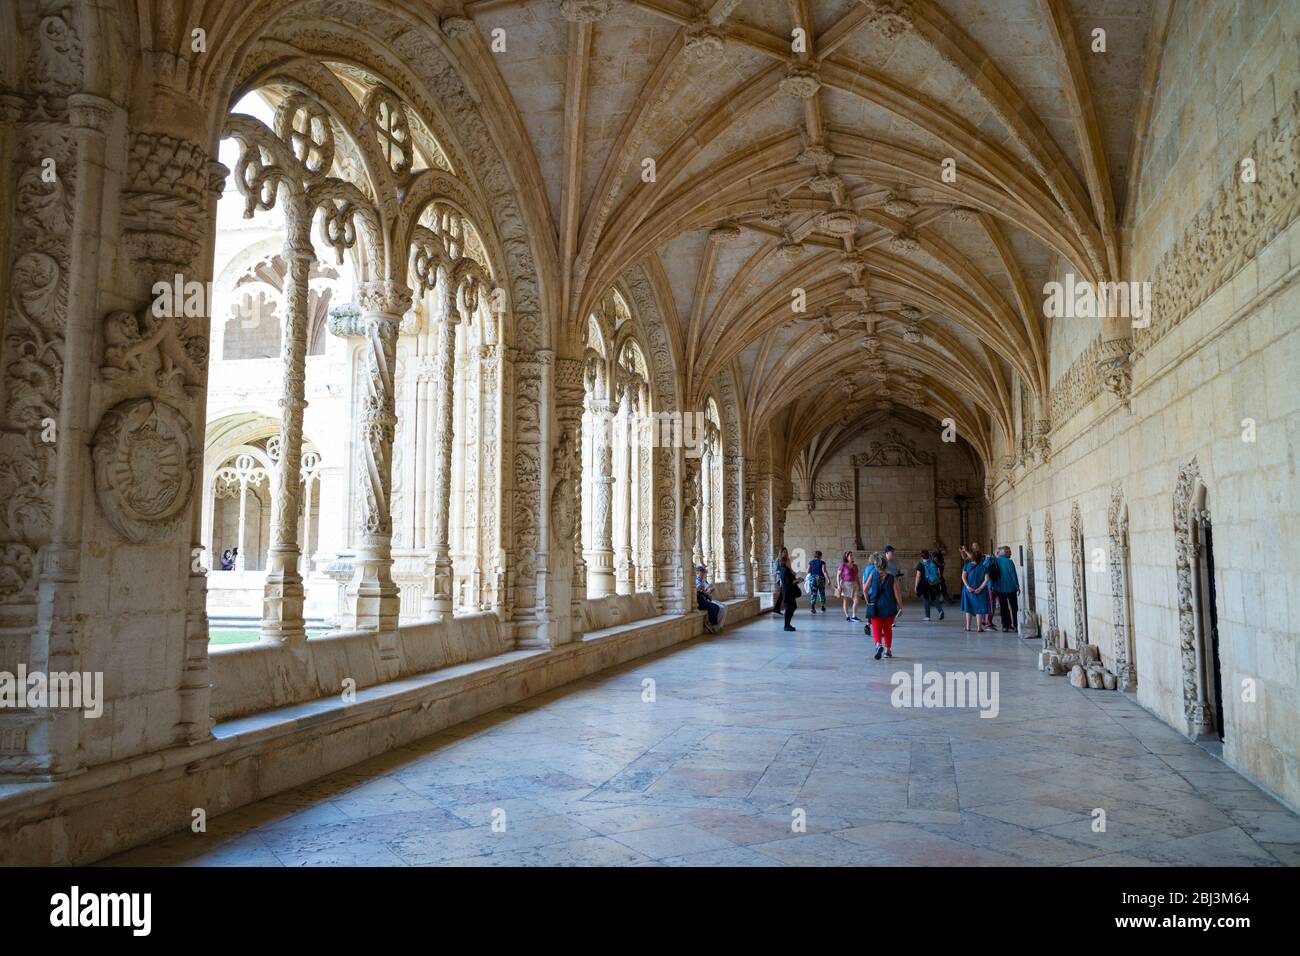 Turistas en claustros del famoso Monasterio de Jeronimos - Mosteiro dos Jeronimos en Lisboa, Portugal Foto de stock